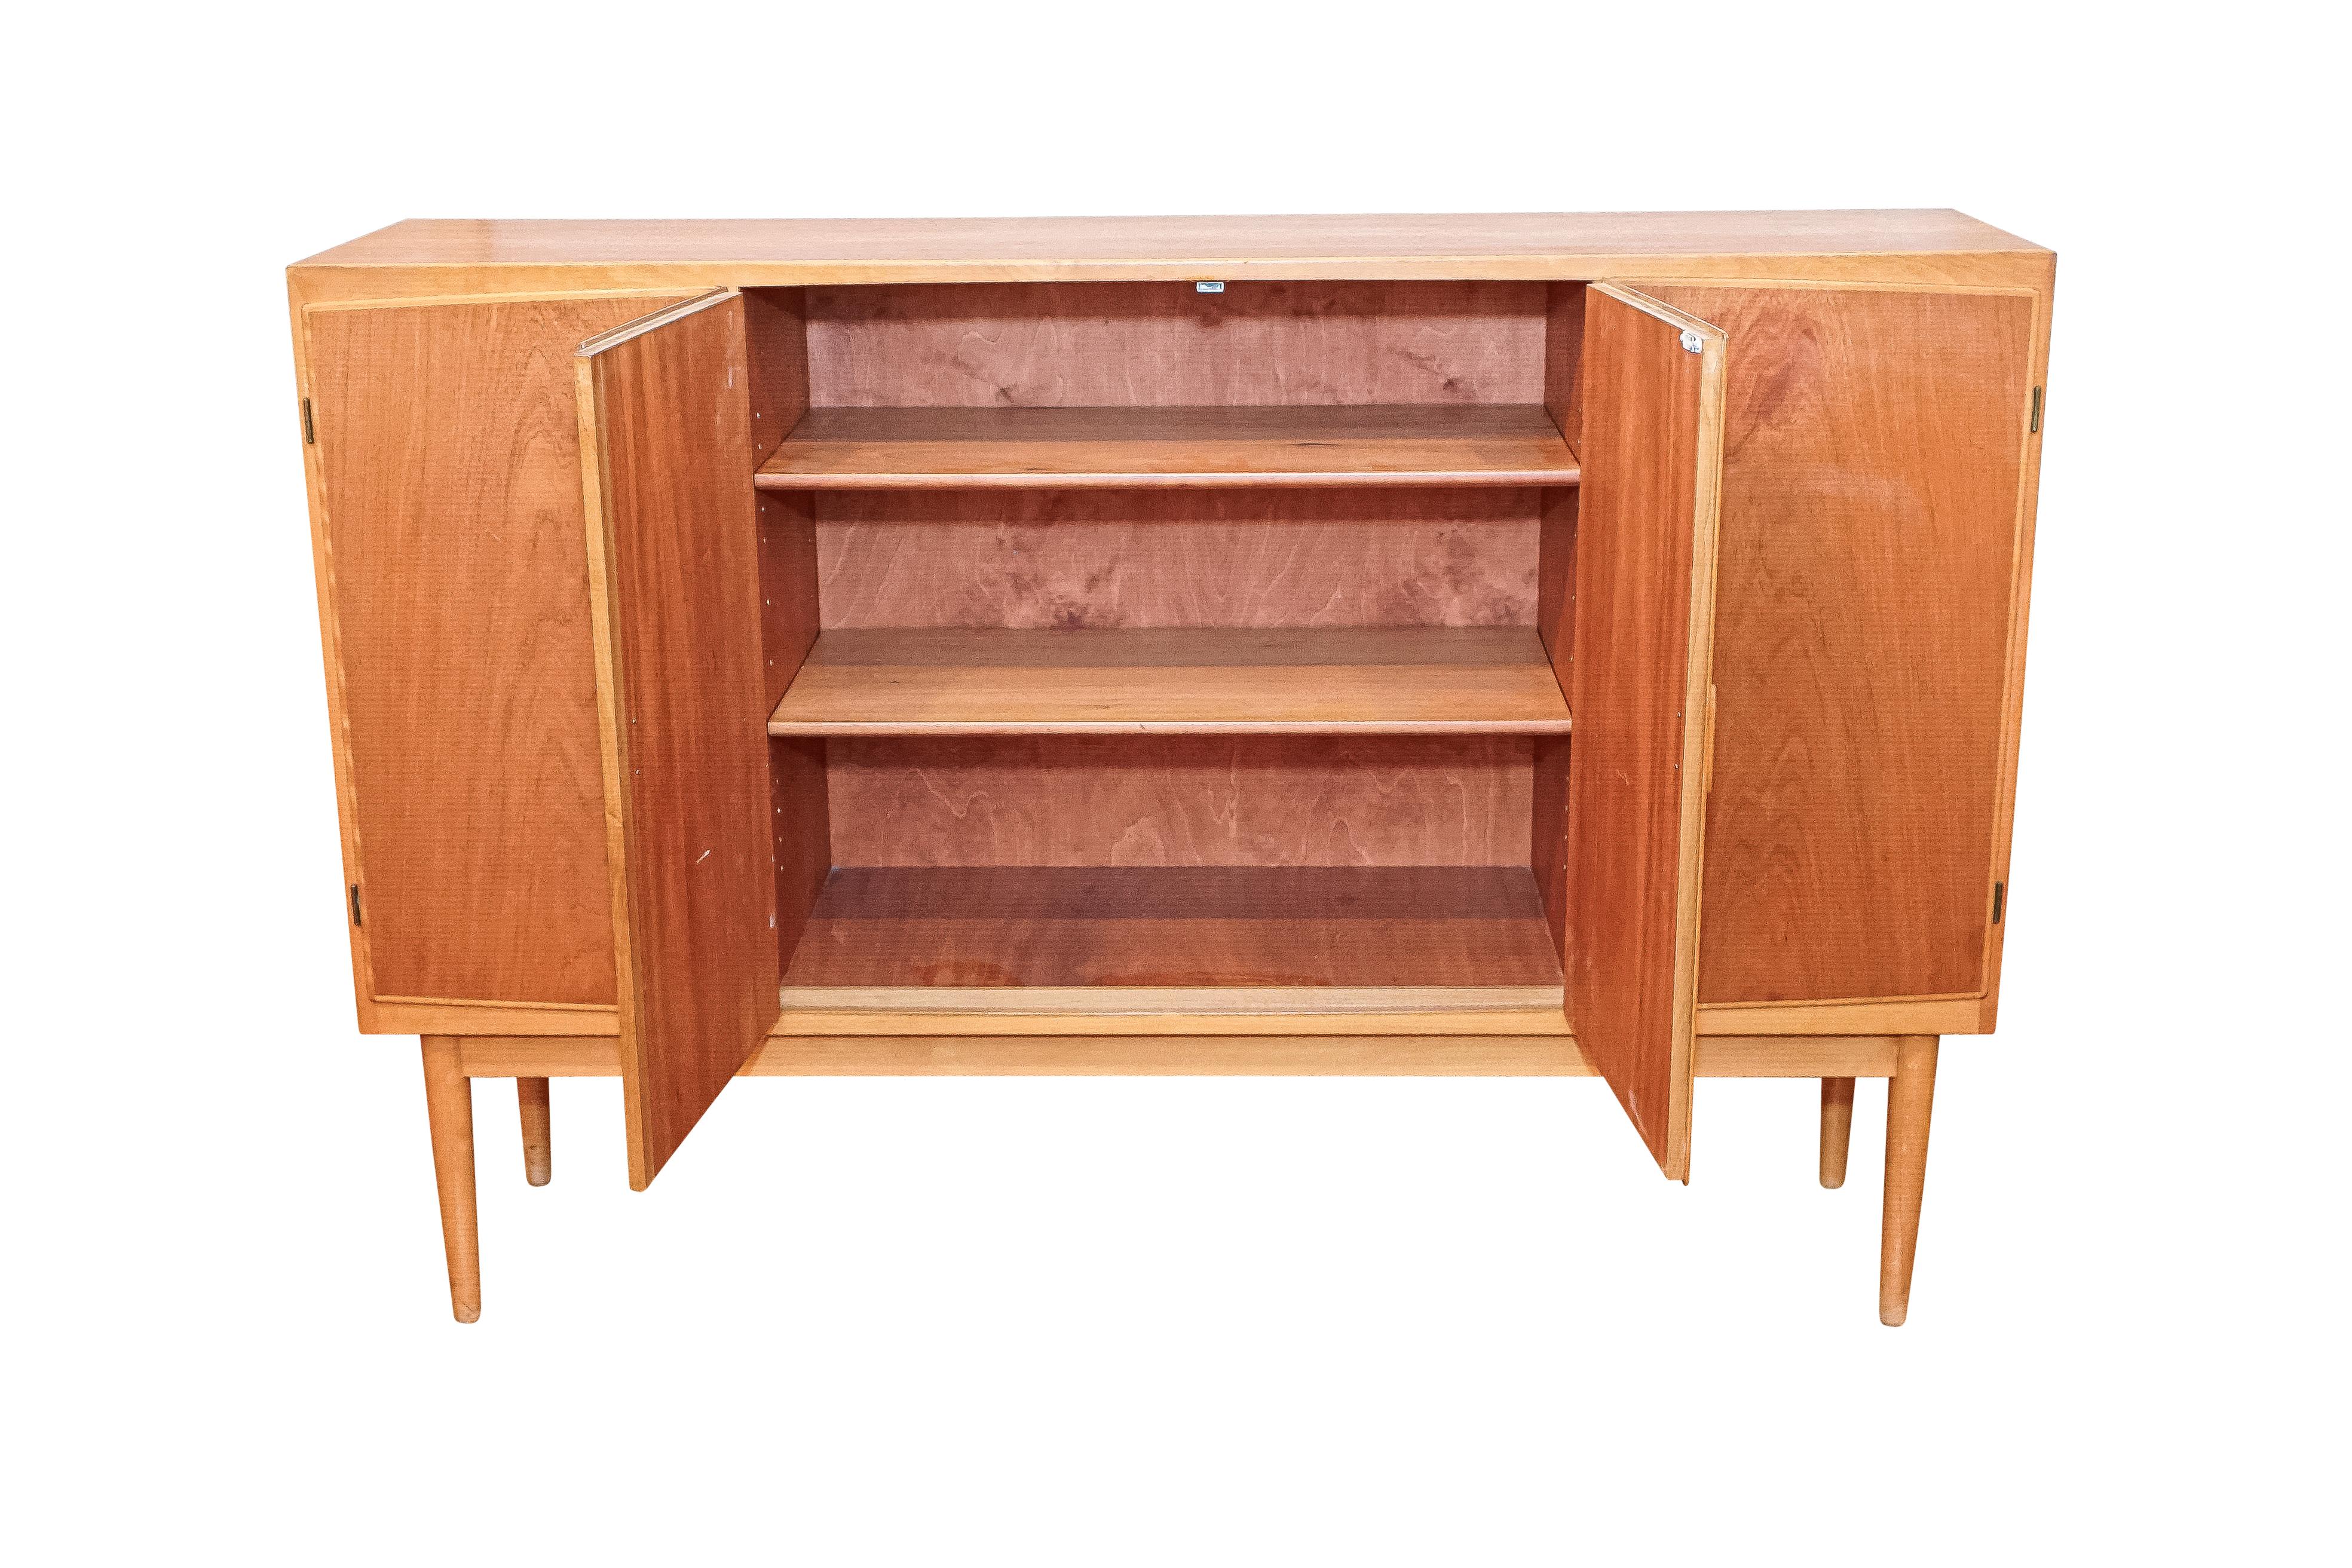 Dieses schöne Beispiel für modernes dänisches Design ist das Werk des berühmten Möbelschreiners Poul Jeppesen und gehört zu der berühmten Rungstedlund-Serie aus den frühen 1950er Jahren. Die verstellbaren Einlegeböden und die acht unterschiedlich